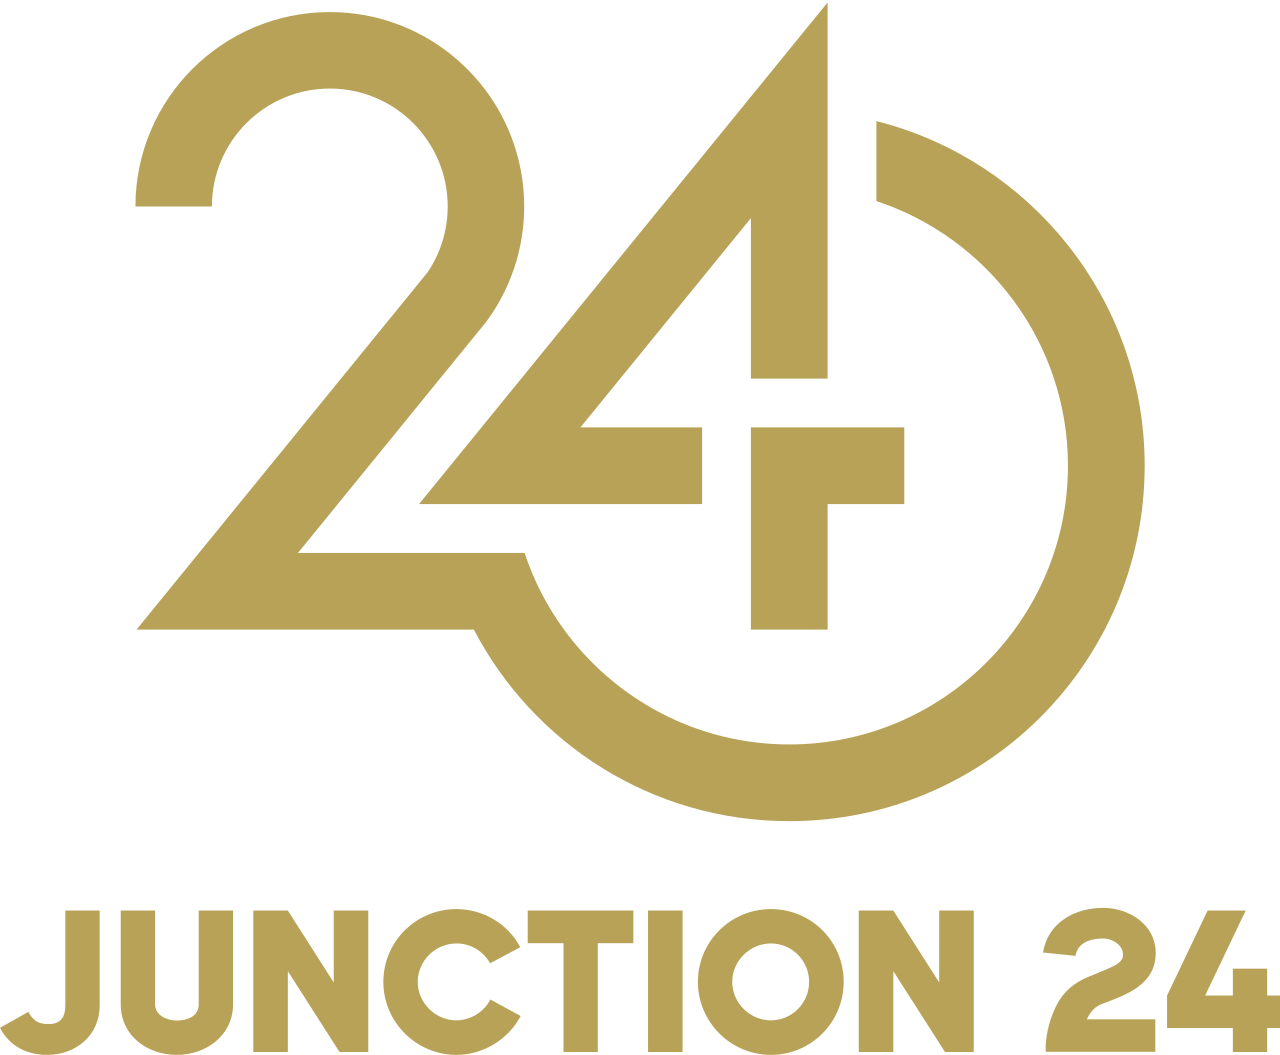 Junction 24's logo